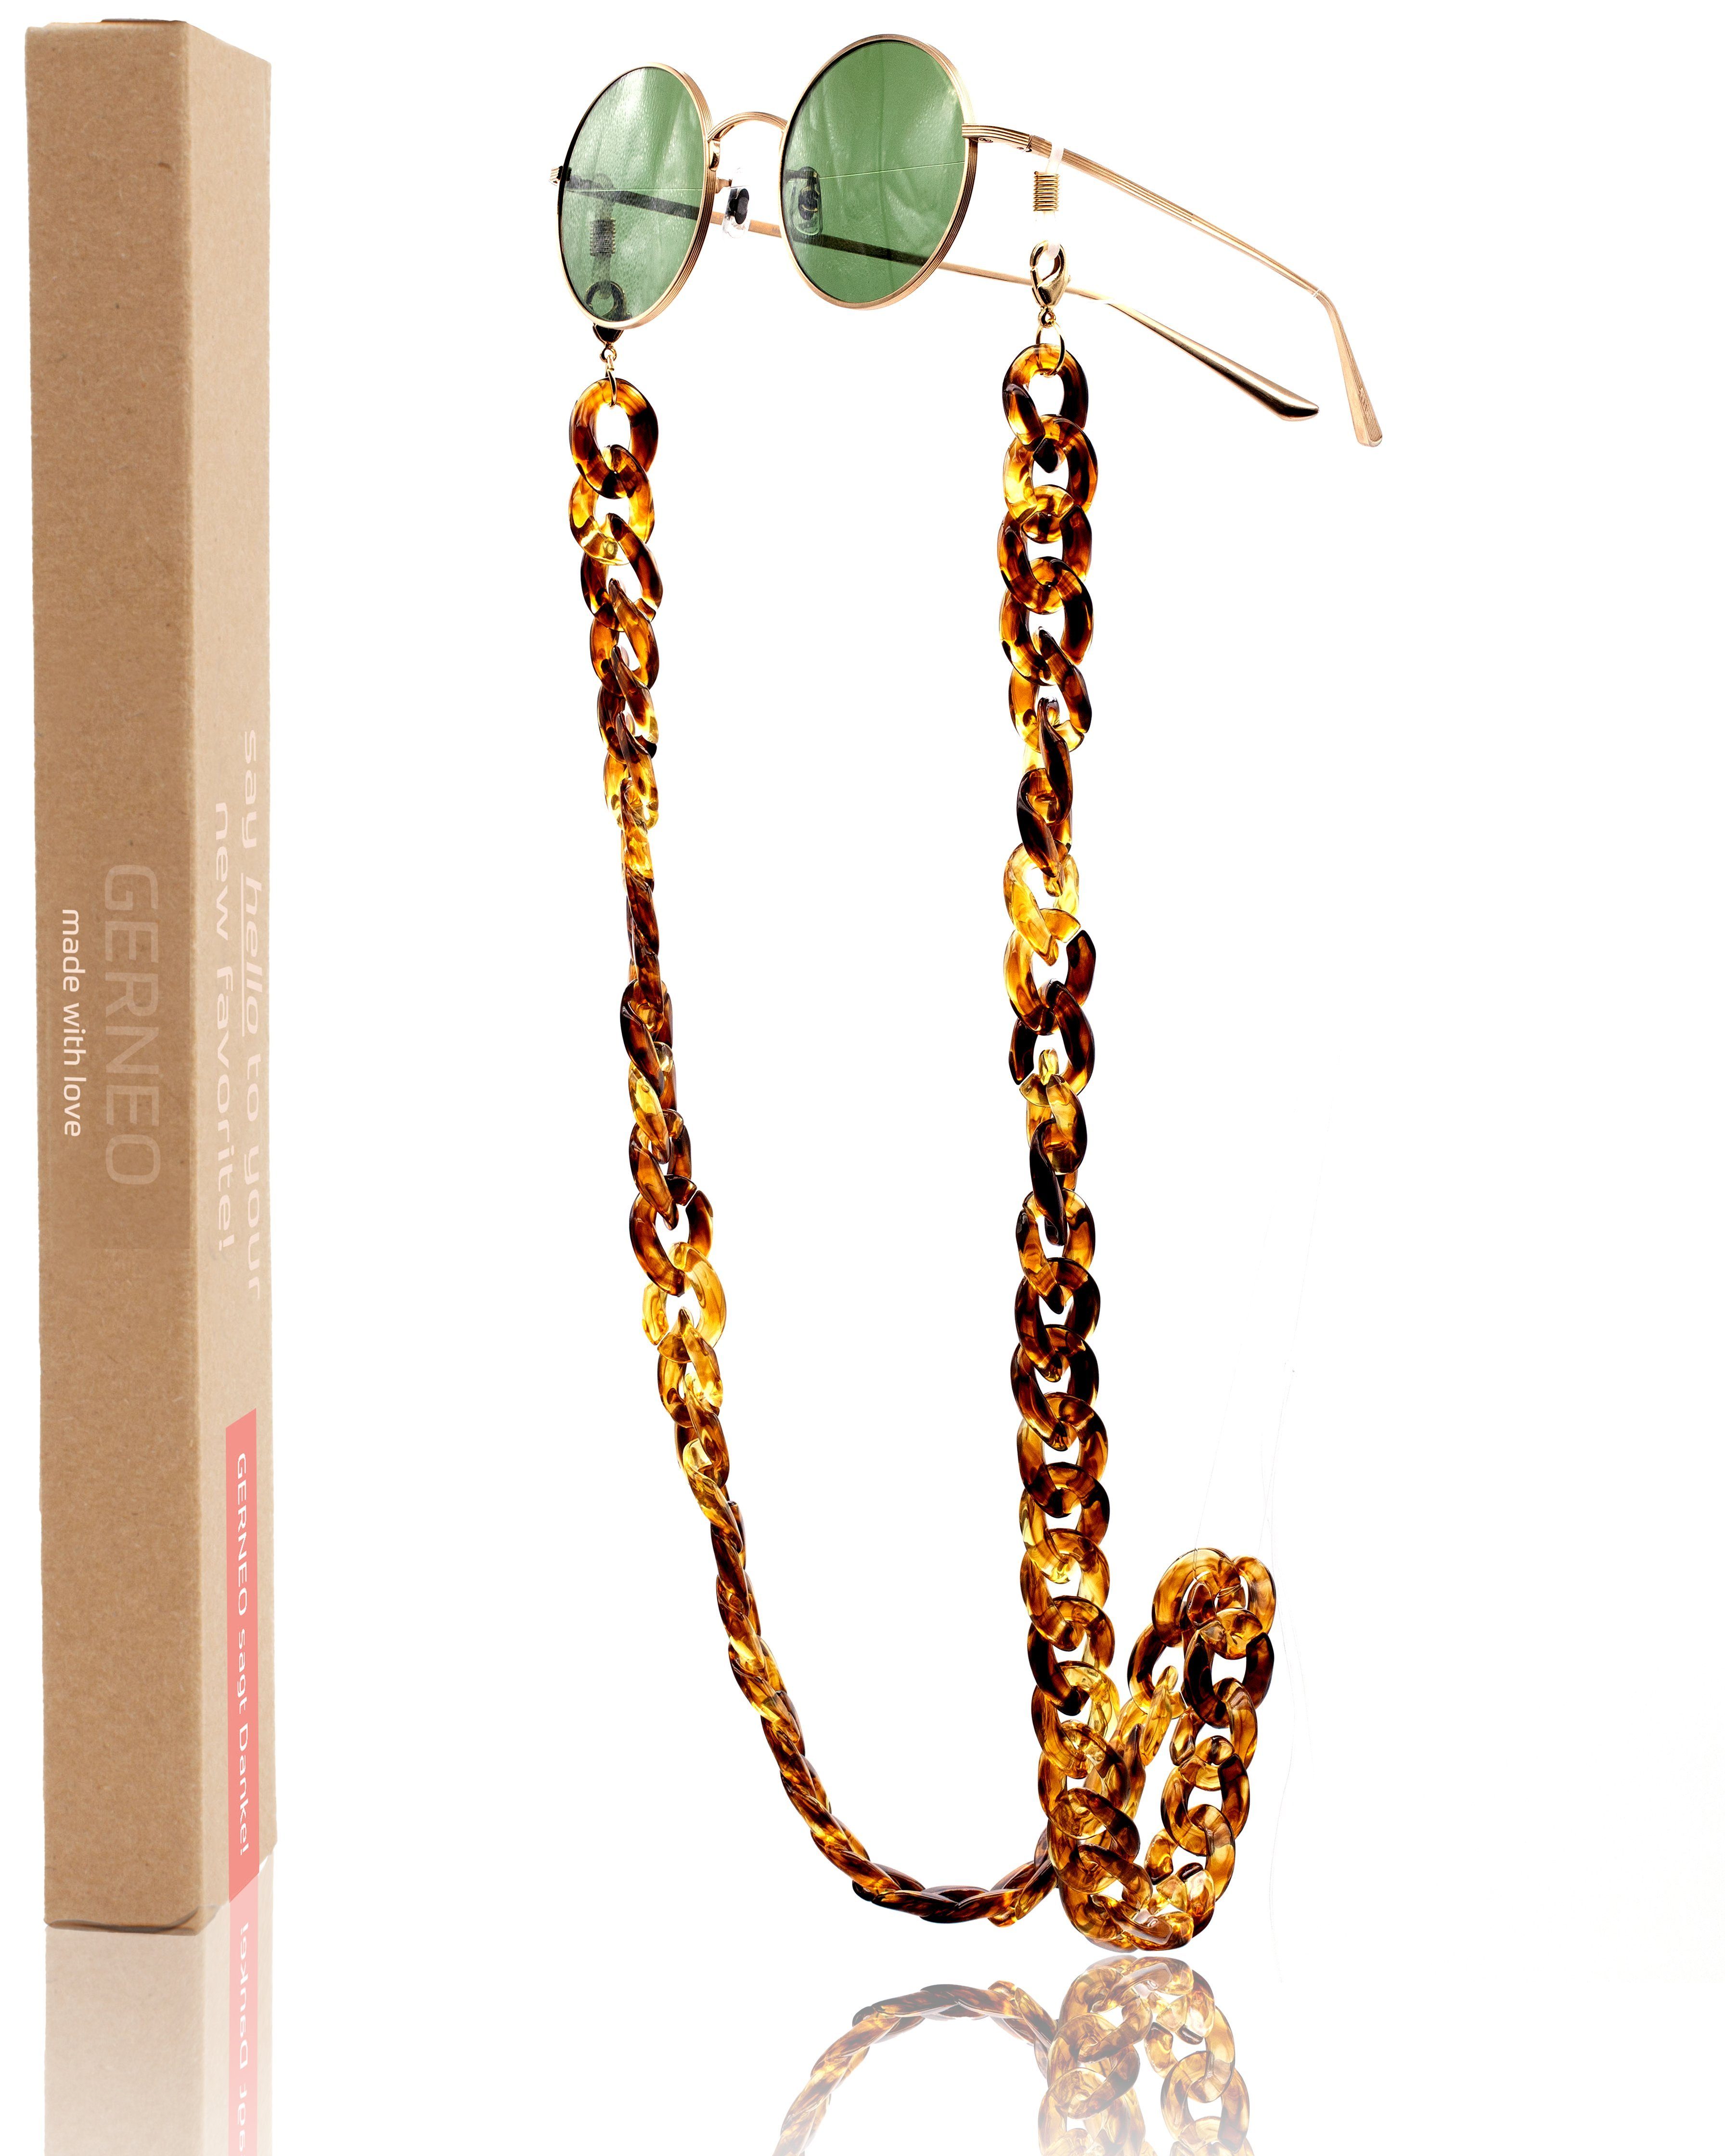 GERNEO Brillenkette GERNEO® - Havanna – Maskenhalter & Brillenkette Gold aus Acryl, korrosionsbeständig einzigartig hochwertige Brillen Kette Brillenband Braun